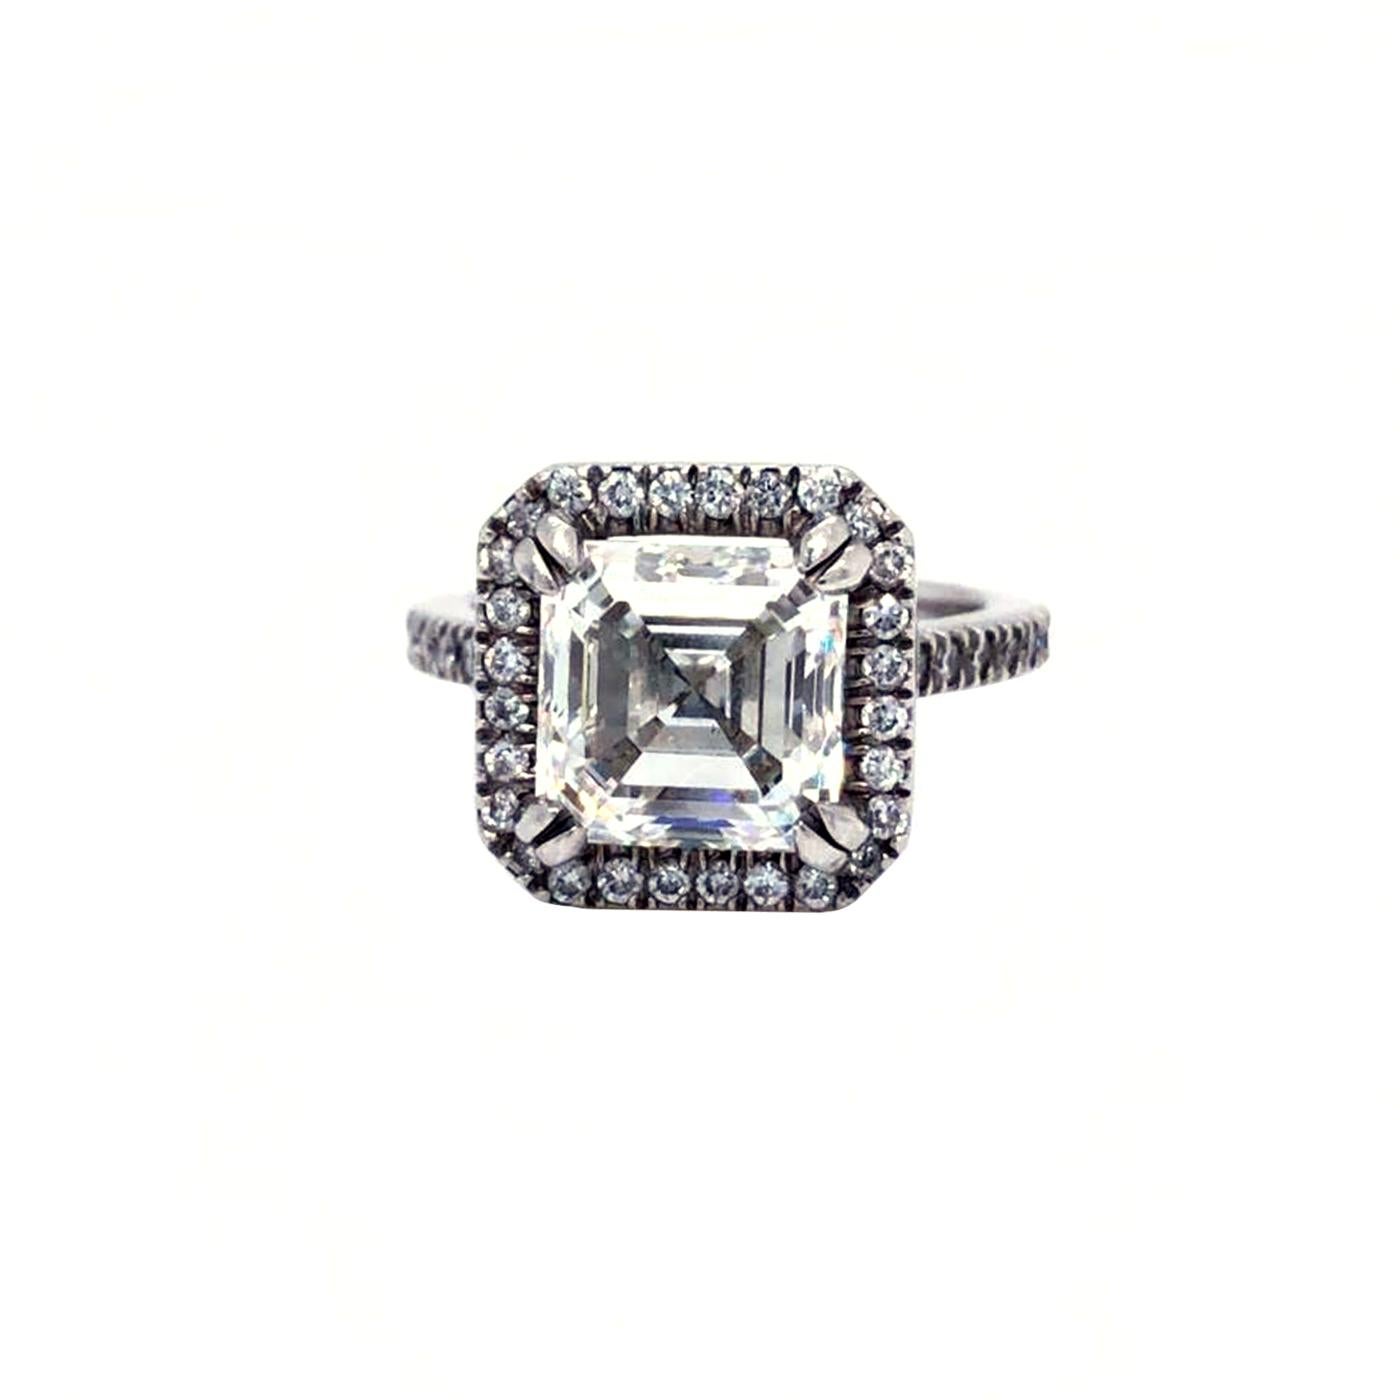 Dieser atemberaubende Ring besteht aus einem natürlichen Diamanten im Asscher-Schliff mit der Farbe H und der Reinheit VS1. Dieses fantastische Stück aus Platinmetall in der Größe 6 wird Sie garantiert jahrzehntelang